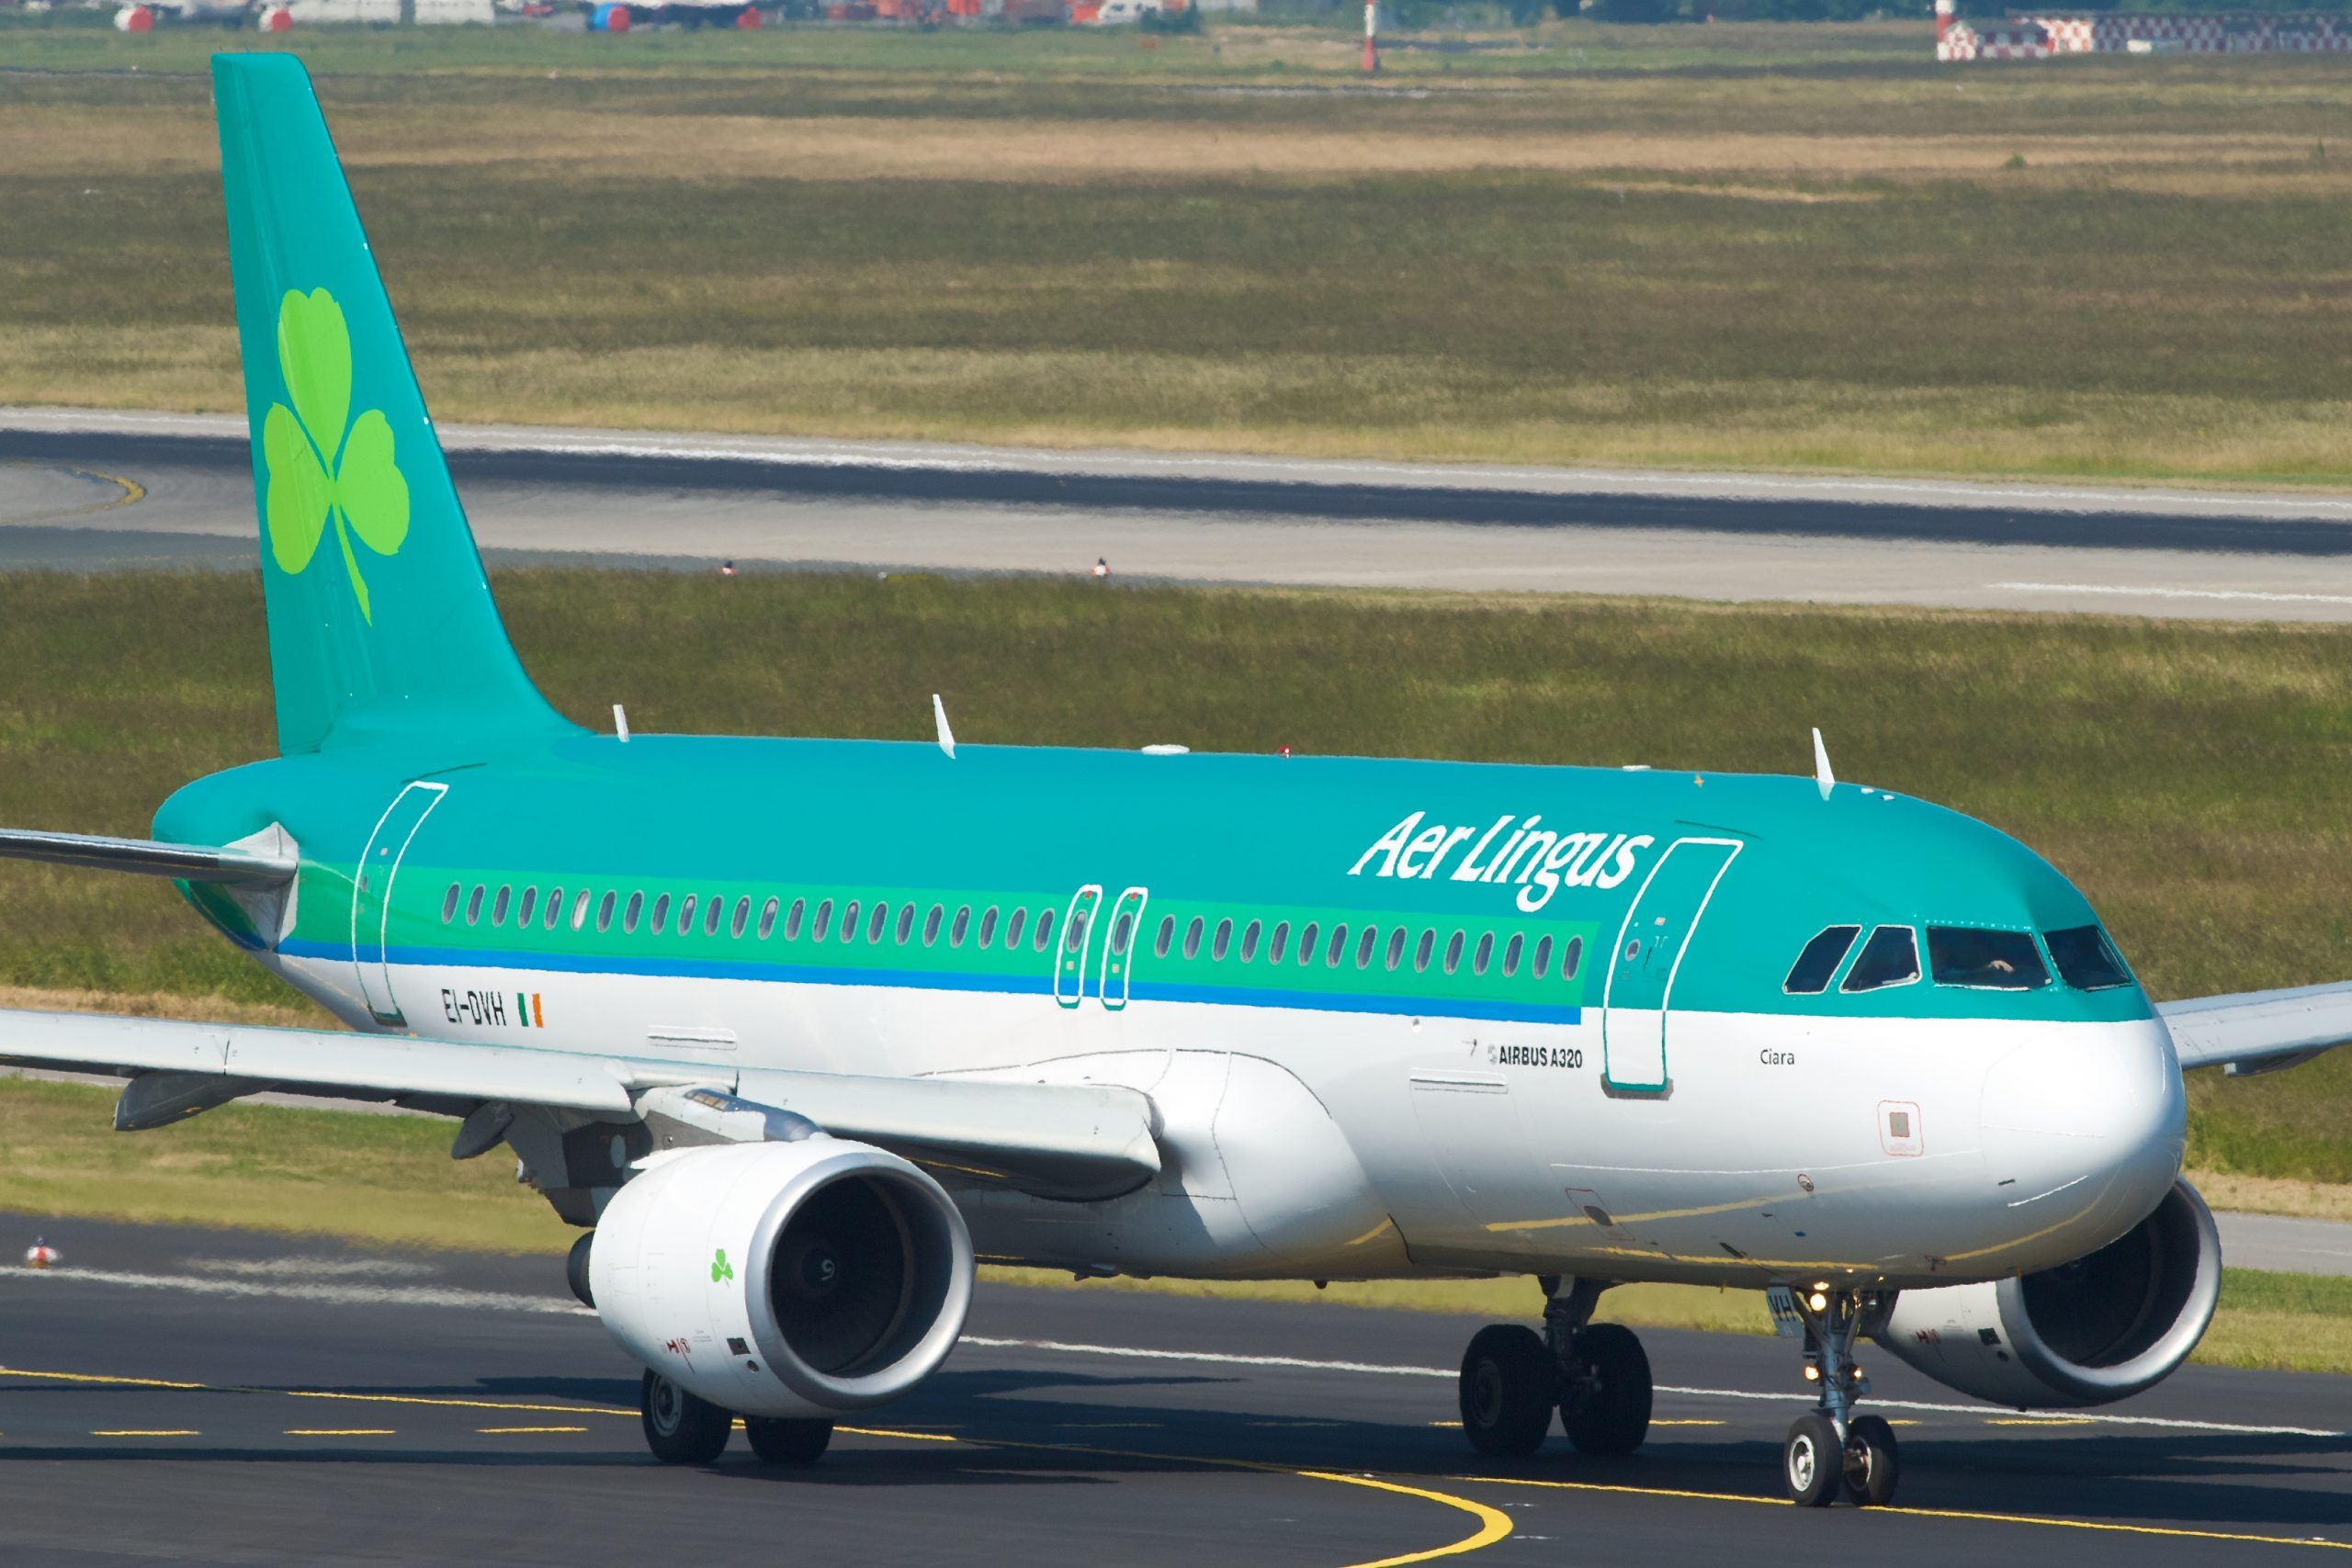 Aliado alineación Matemáticas Política de equipaje de mano de Aer Lingus - Tarifas Error